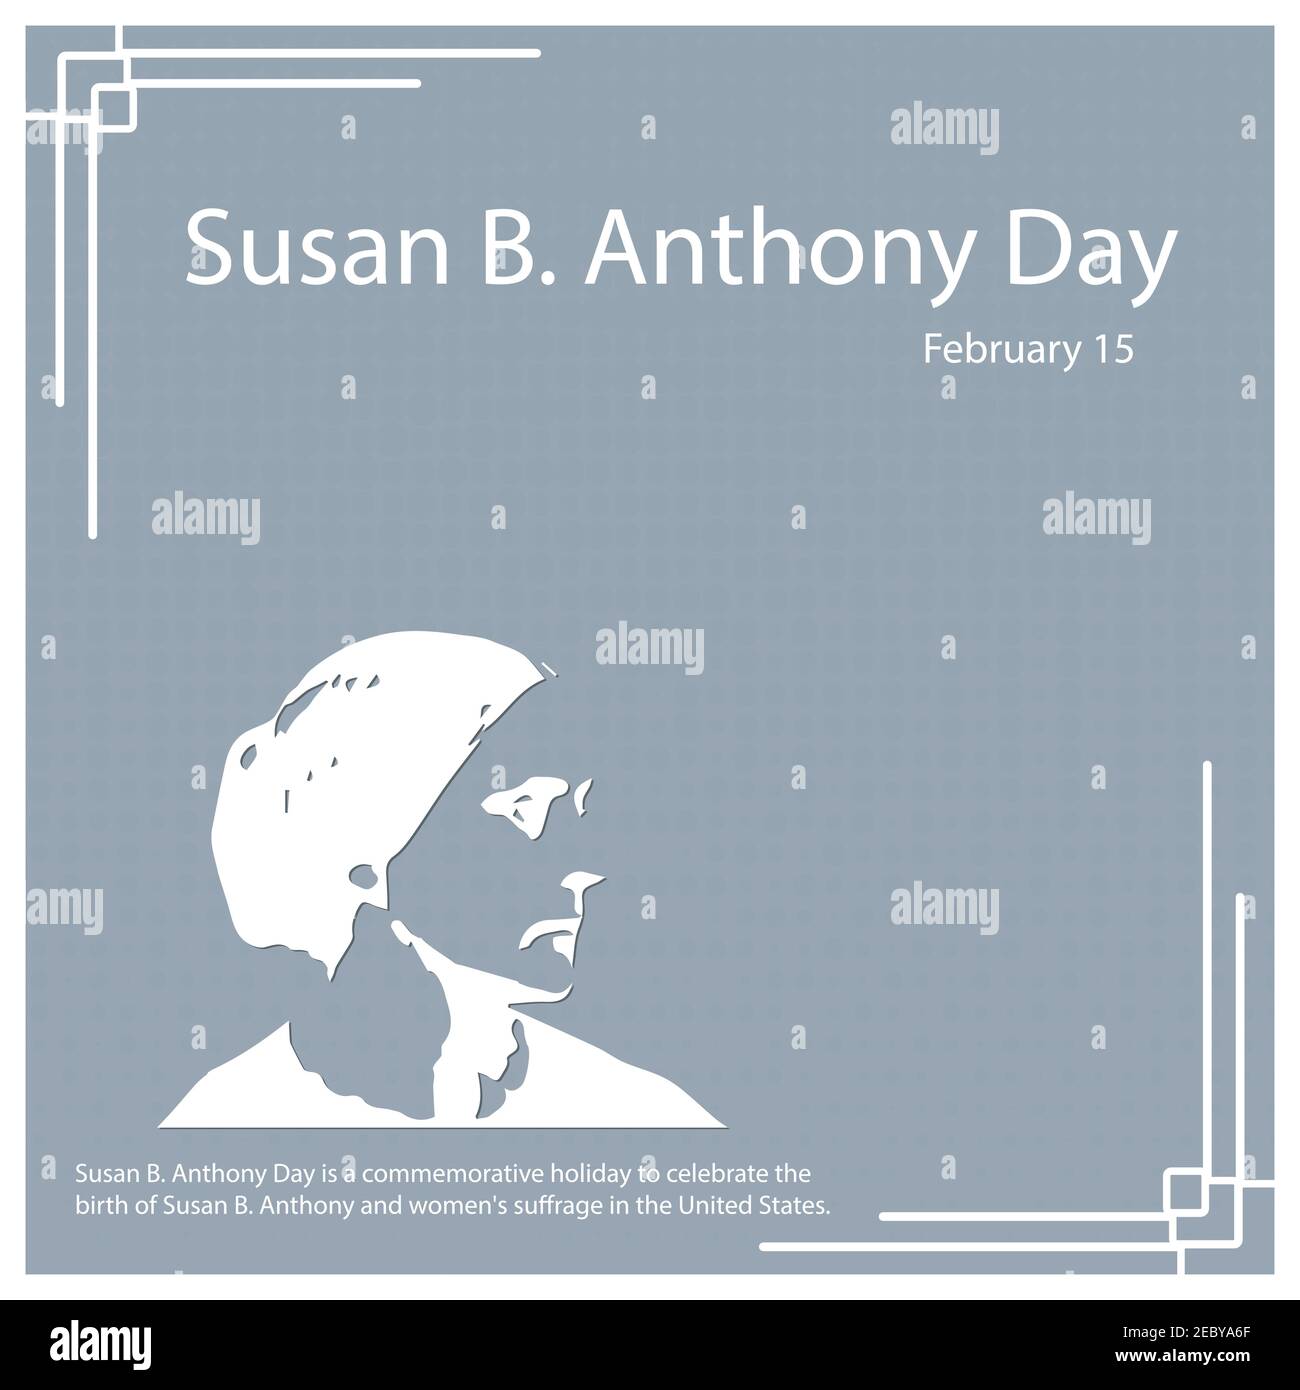 Susan B. Anthony Day è una festa commemorativa per celebrare la nascita di Susan B. Anthony e il suffragio delle donne negli Stati Uniti. Illustrazione Vettoriale